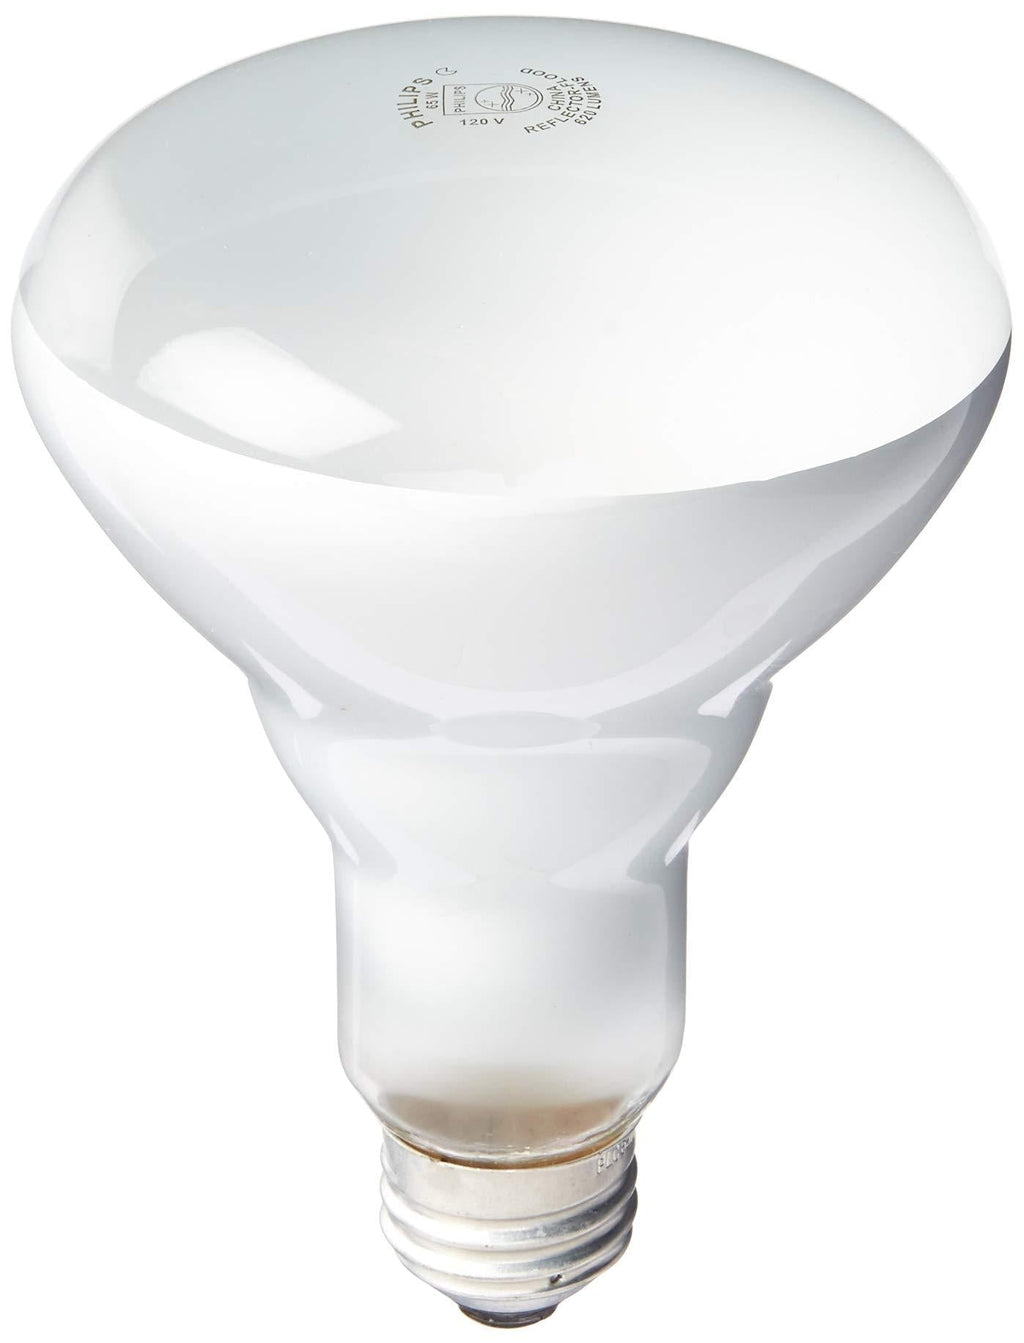 PHILIPS 408662 Soft White 65-watt Br30 Indoor Flood Light Bulb (Pack of 4) 4 Pack